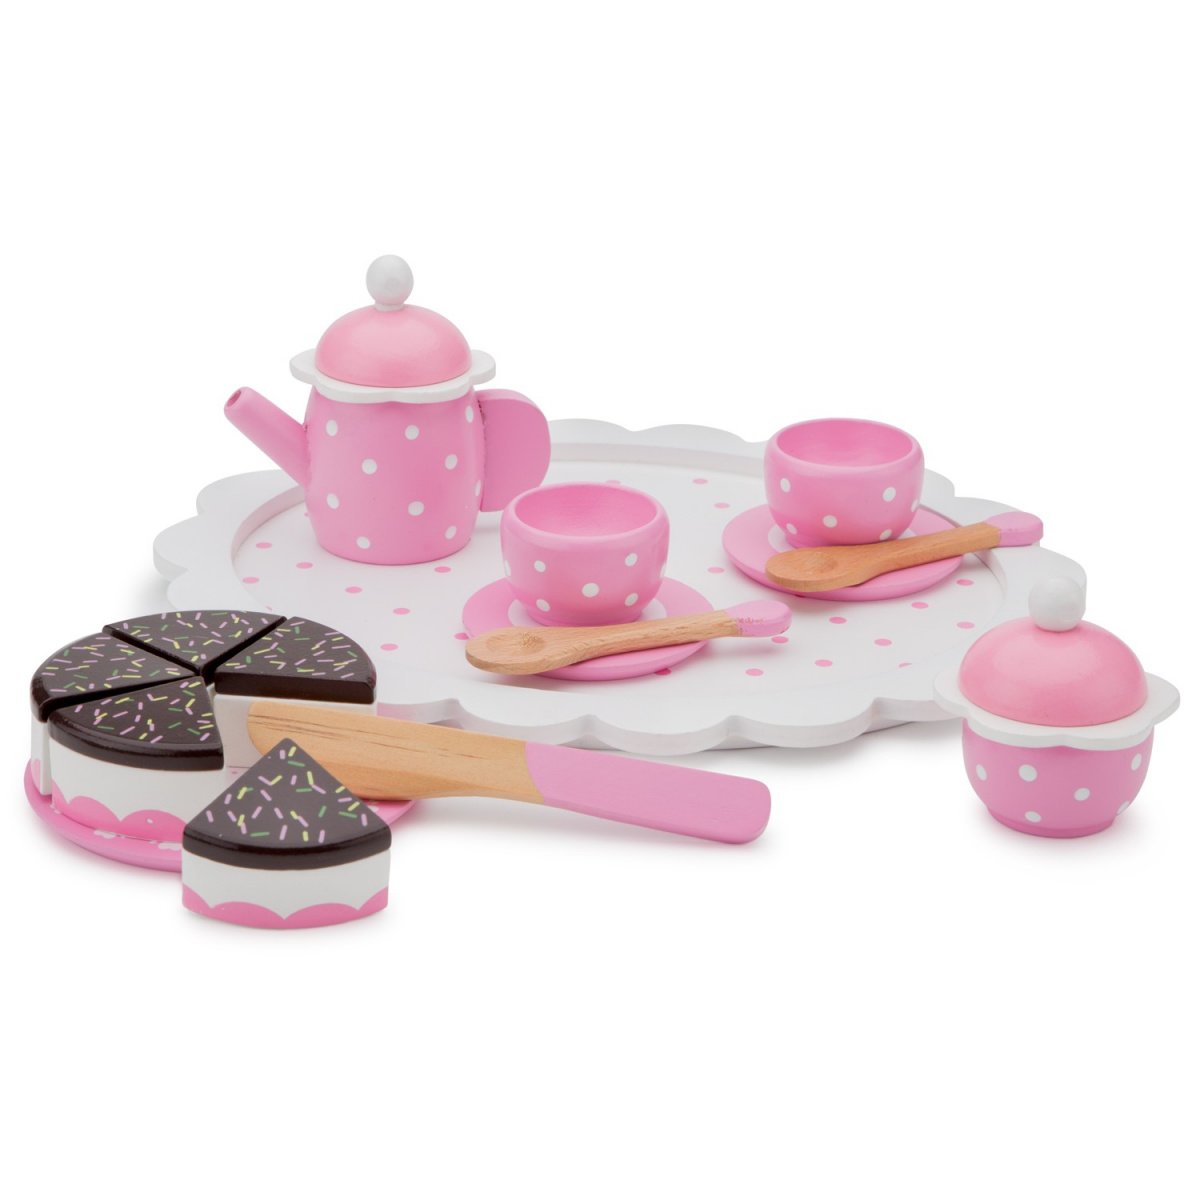 Іграшковий посуд New Classic Toys Чайний набір, рожевий (10620) - фото 2